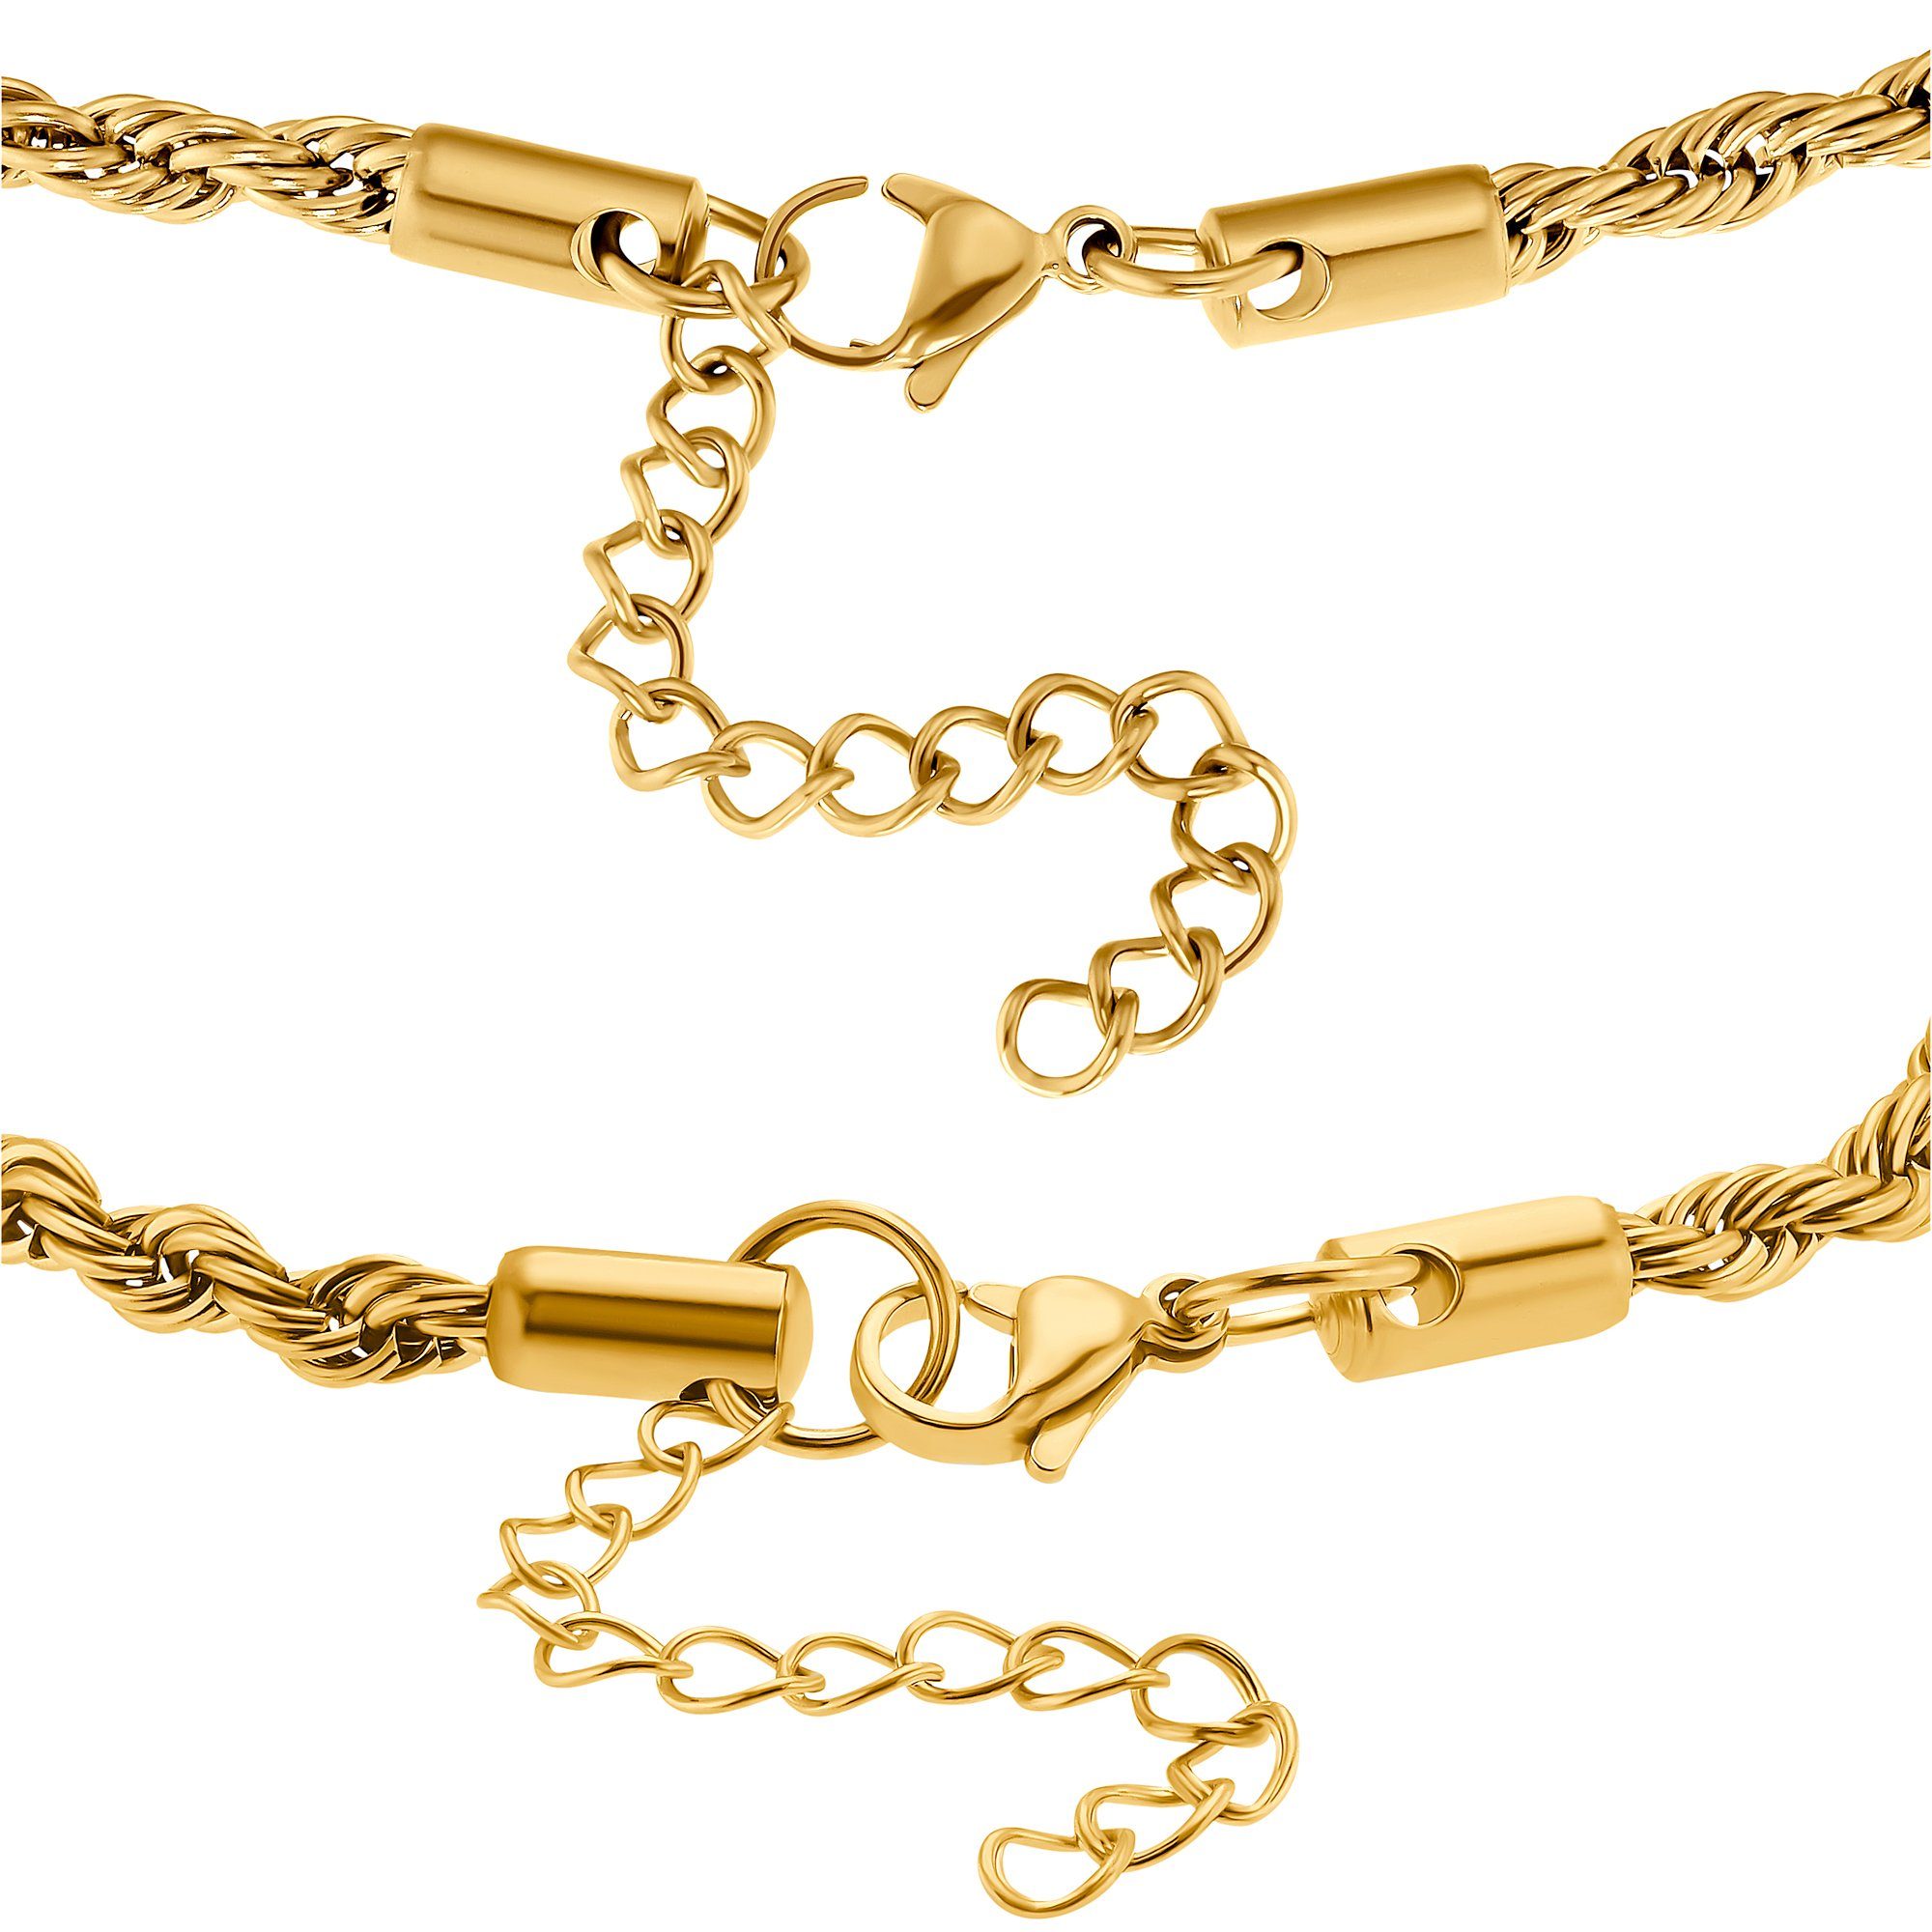 Collier Armband Damen Set mit Geschenkverpackung), goldfarben silberfarben für Kette Geschenkset Heideman Caius (inkl. und